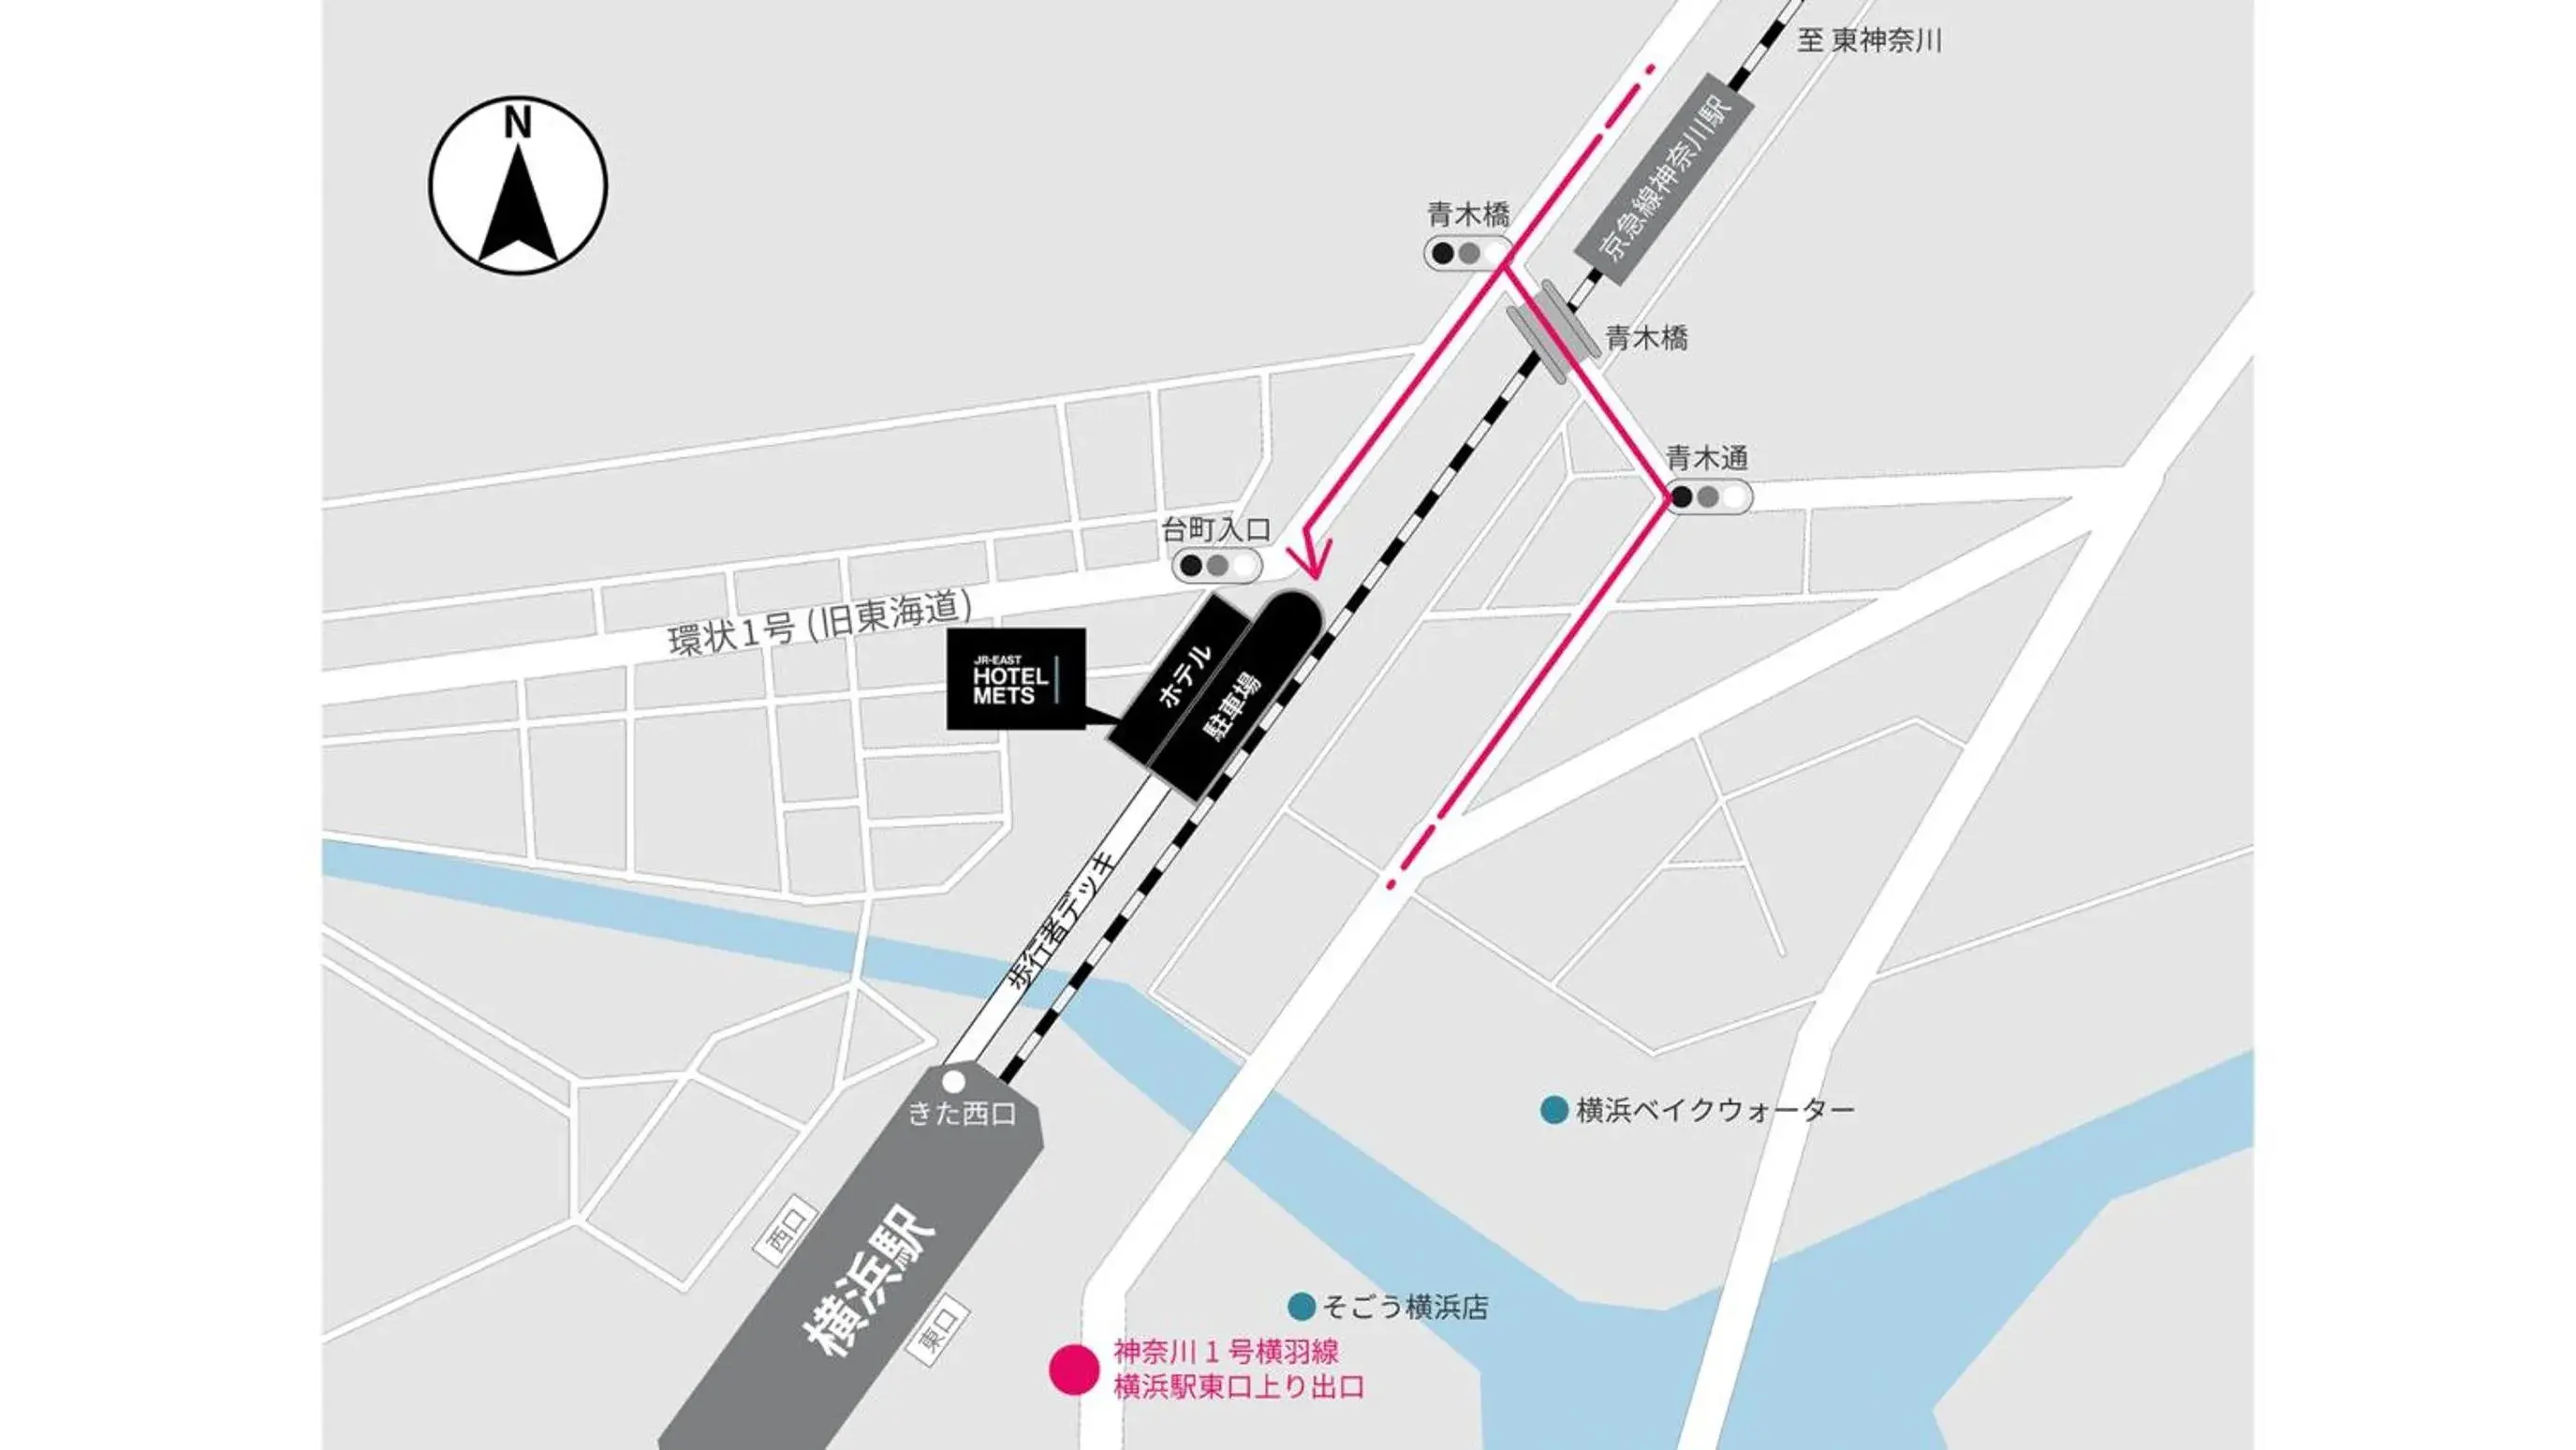 Floor Plan in JR-EAST HOTEL METS YOKOHAMA